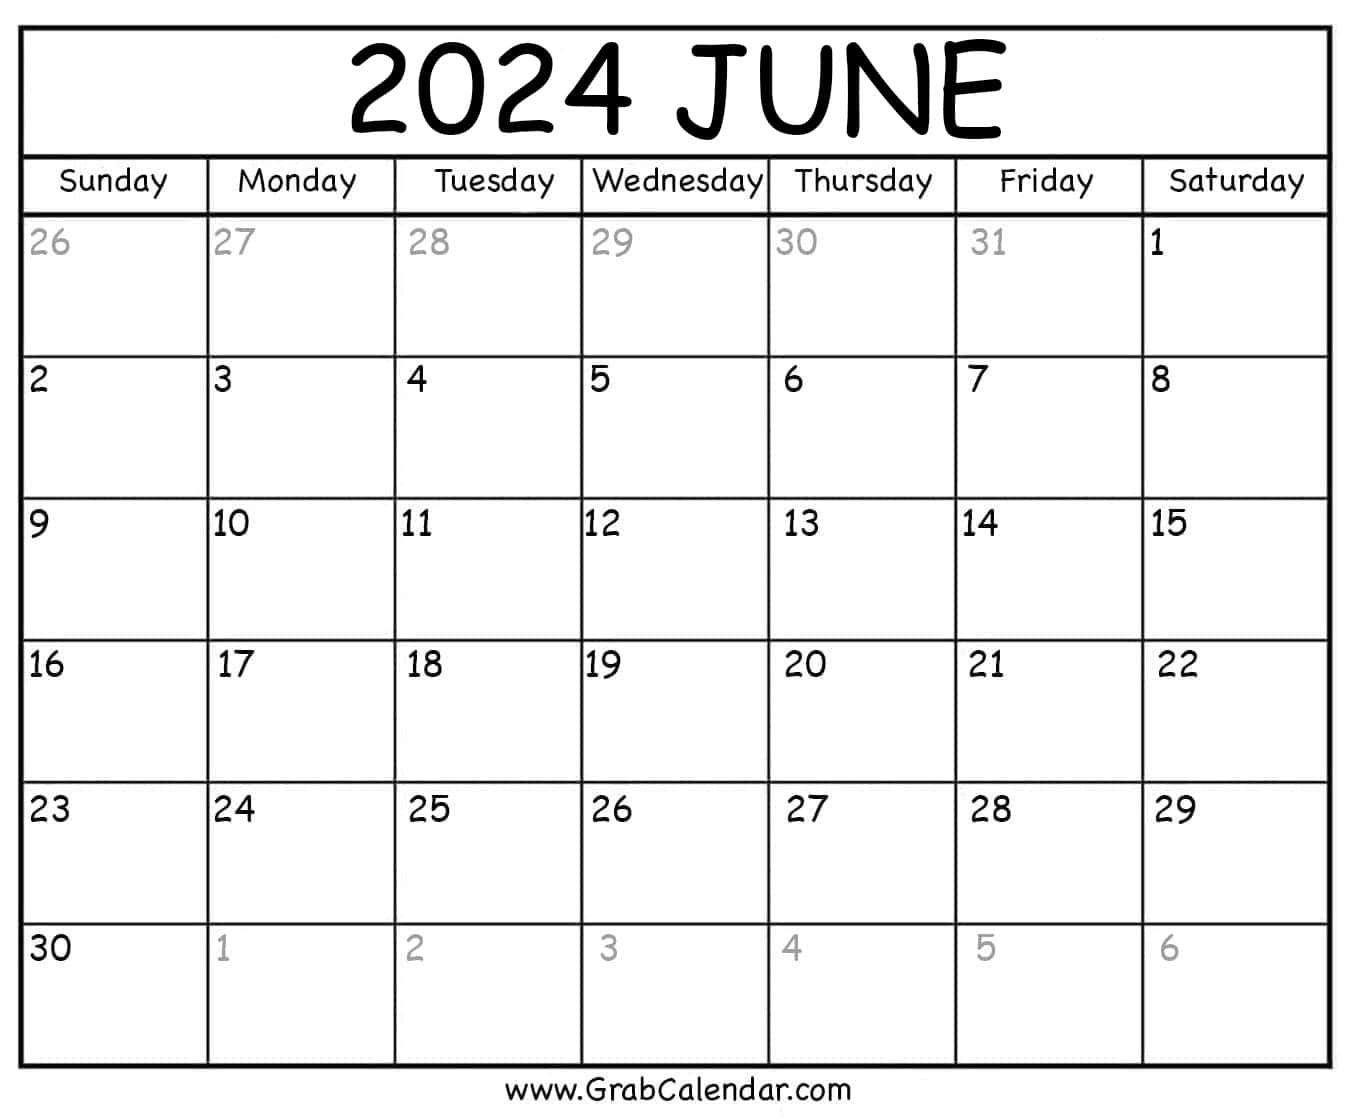 Printable June 2024 Calendar | June 2024 Calendar to Print